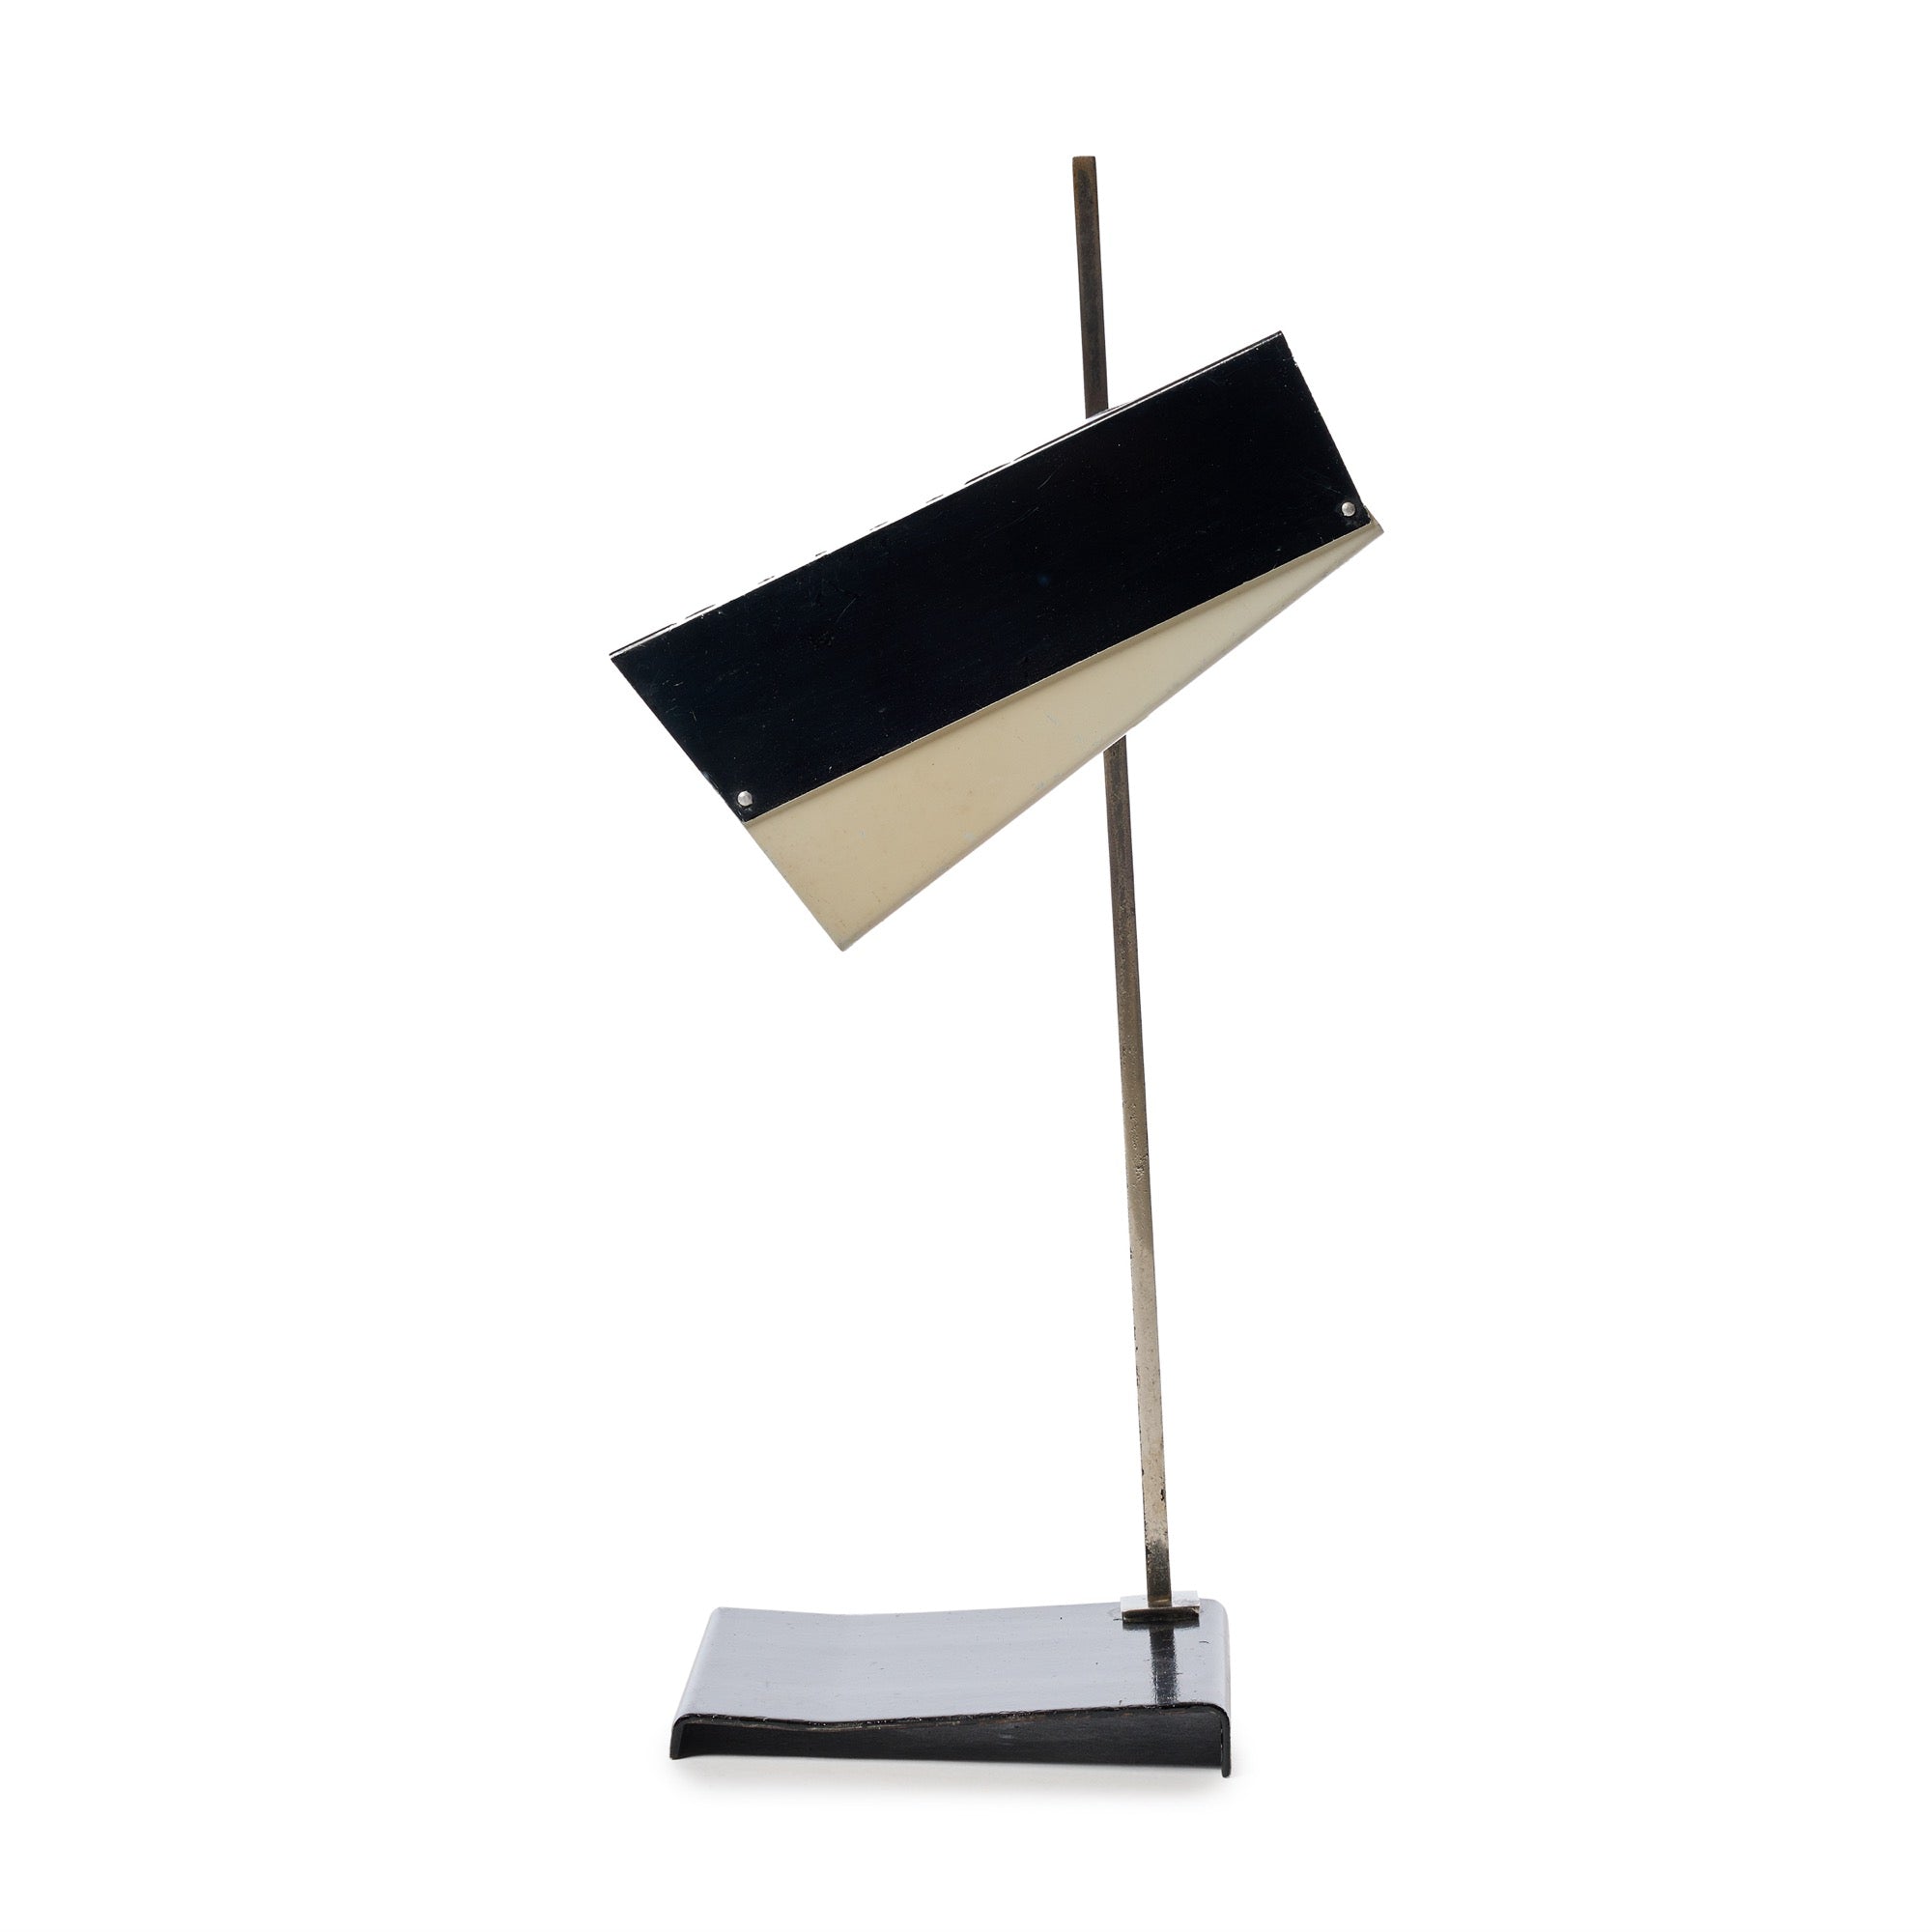 Modernist Desk Lamp from Hungary, 1960s